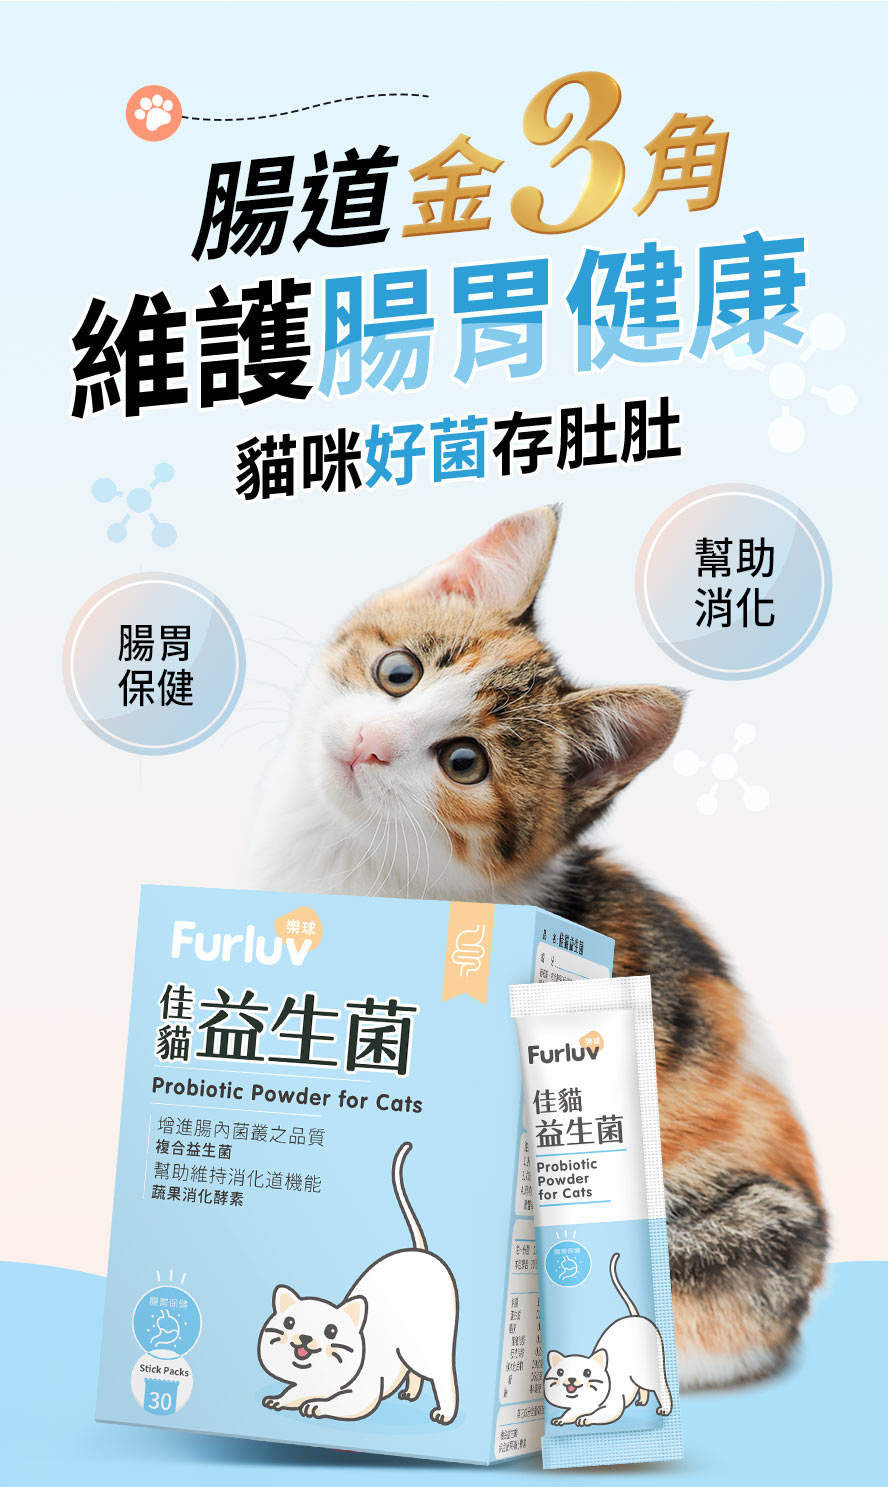 Furluv樂球佳貓益生菌幫助貓咪腸胃保健及幫助消化，優質好菌可以增進腸內菌叢品質，改善大便型態。